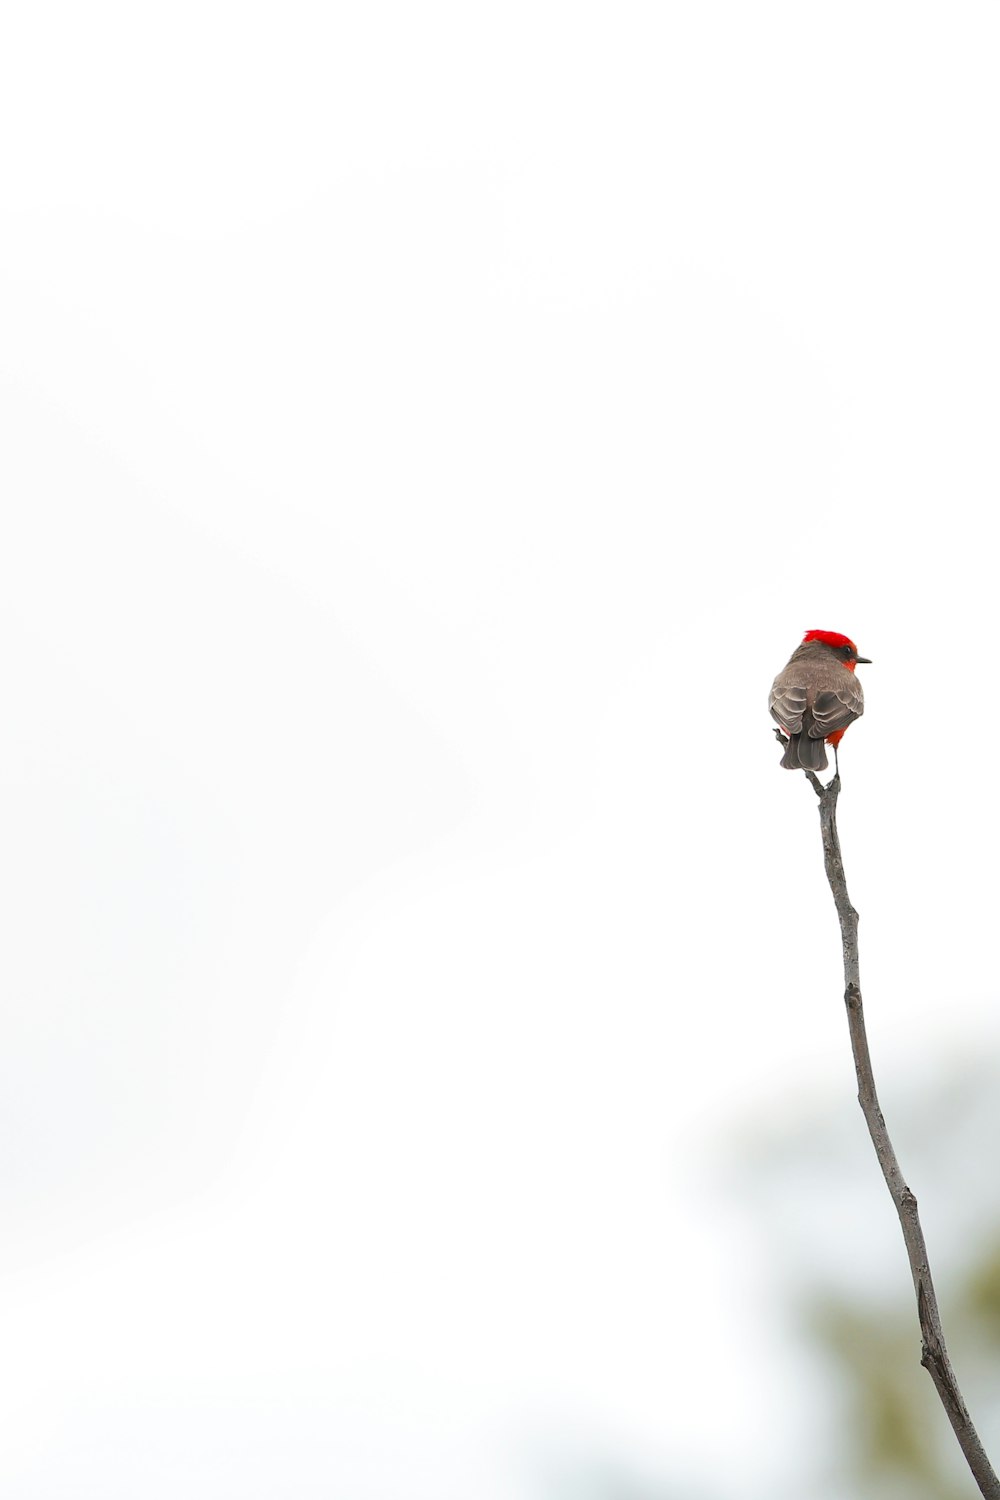 red bird perching on branch